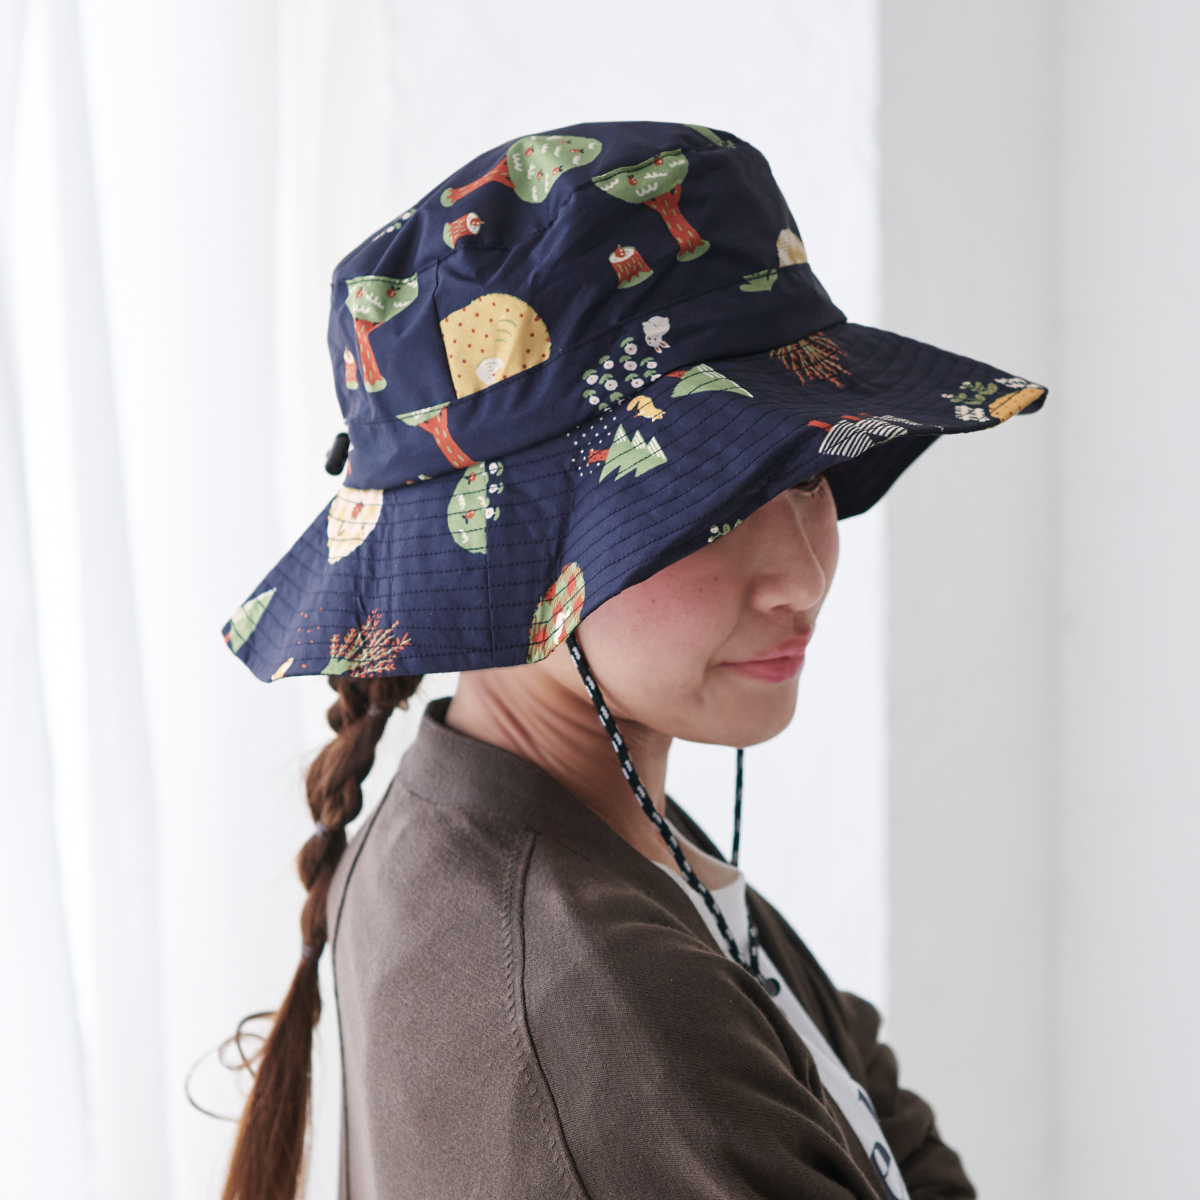 人気デザイナー 帽子 サファリハット レディース メンズ 防水 UVカット ユニセックス 傘生地 アウトドア 紫外線防止 撥水 UV遮蔽率98%以上  雨よけ ハット あご紐 財布、帽子、ファッション小物